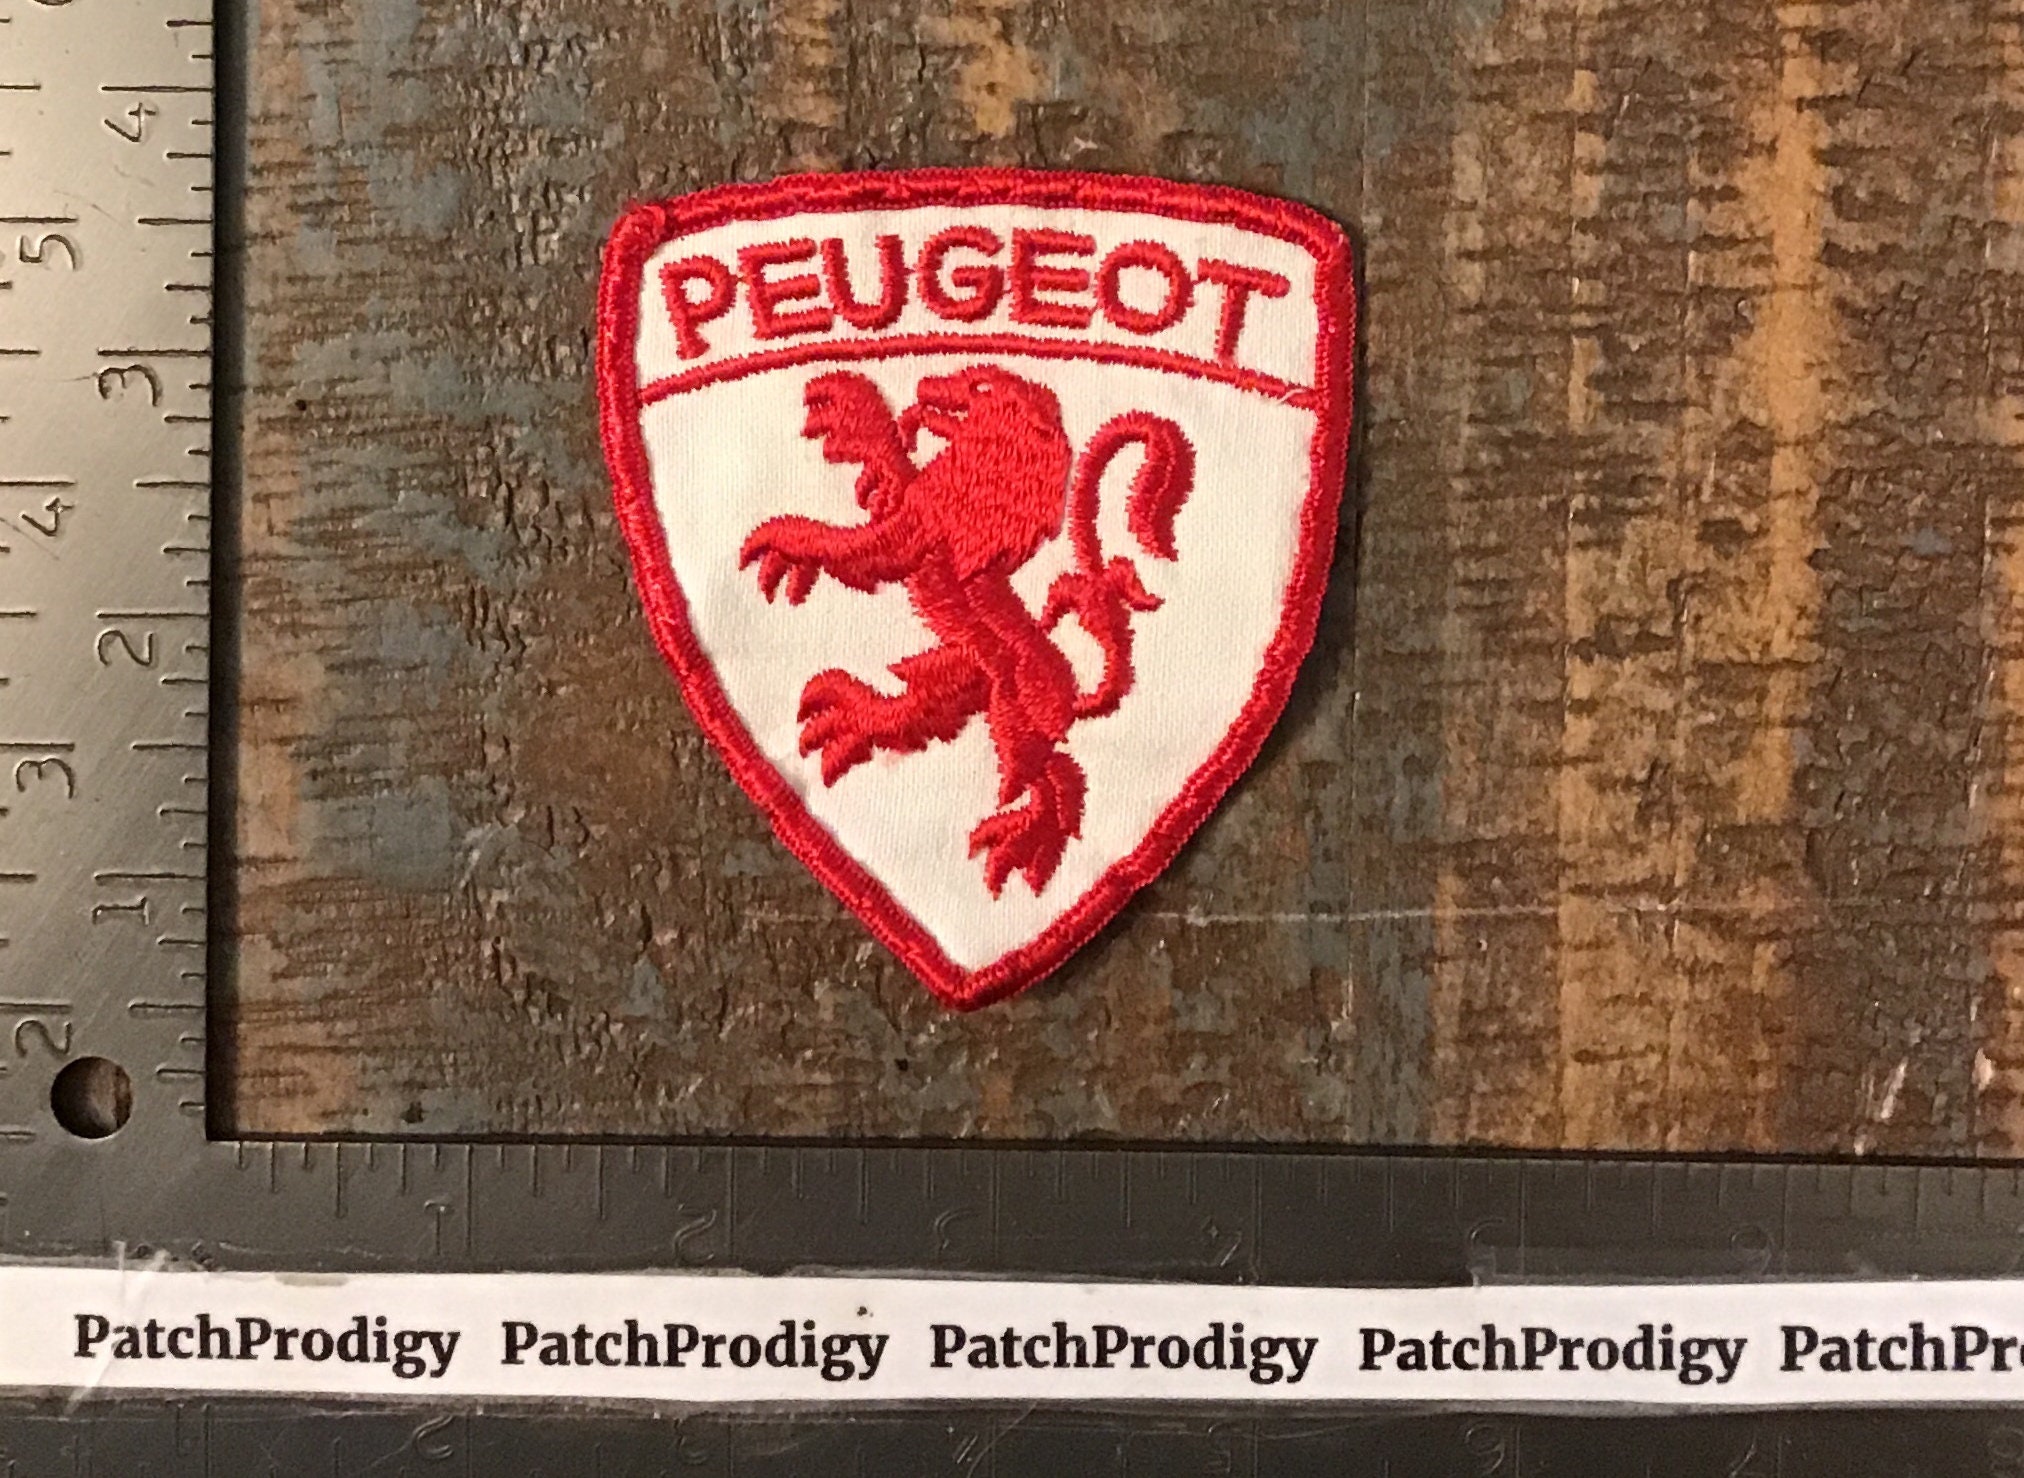 Peugeot Emblem 